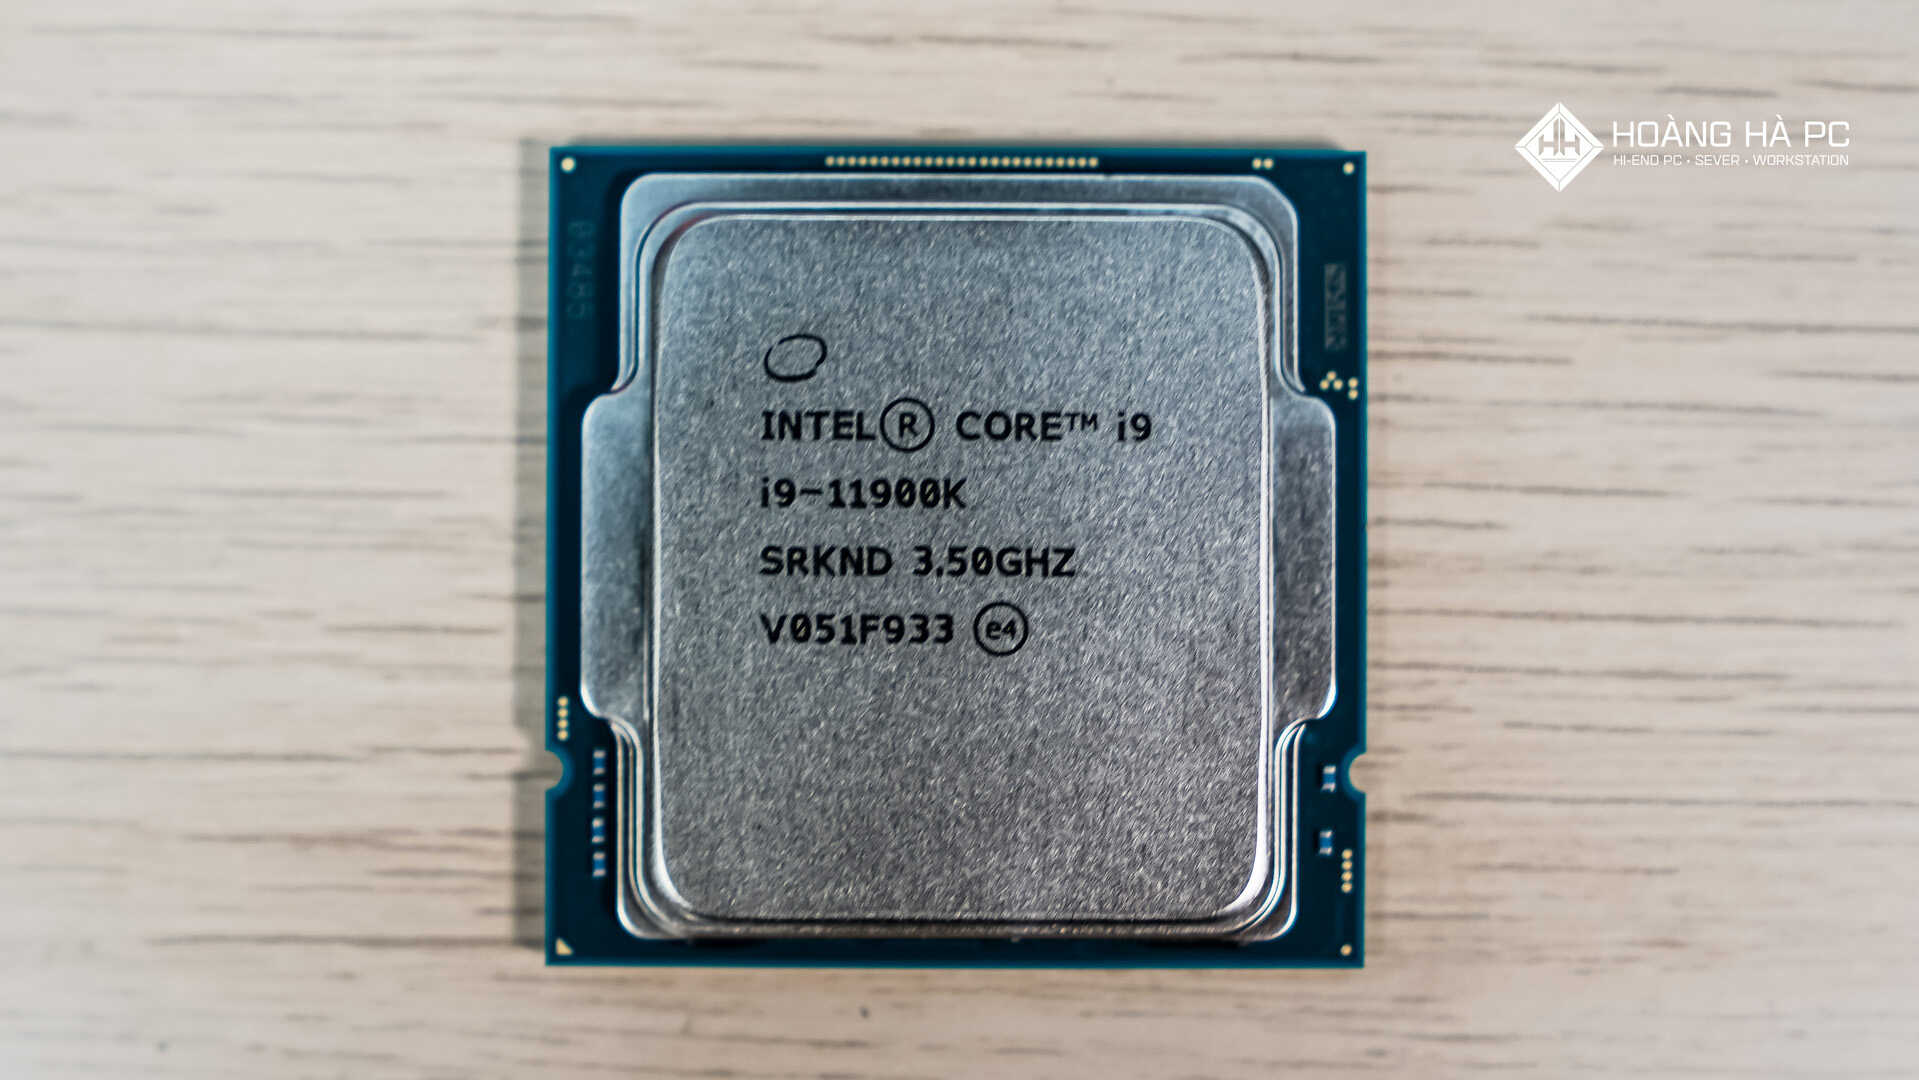 Tổng quan về CPU máy tính: Cấu tạo và nguyên lý hoạt động